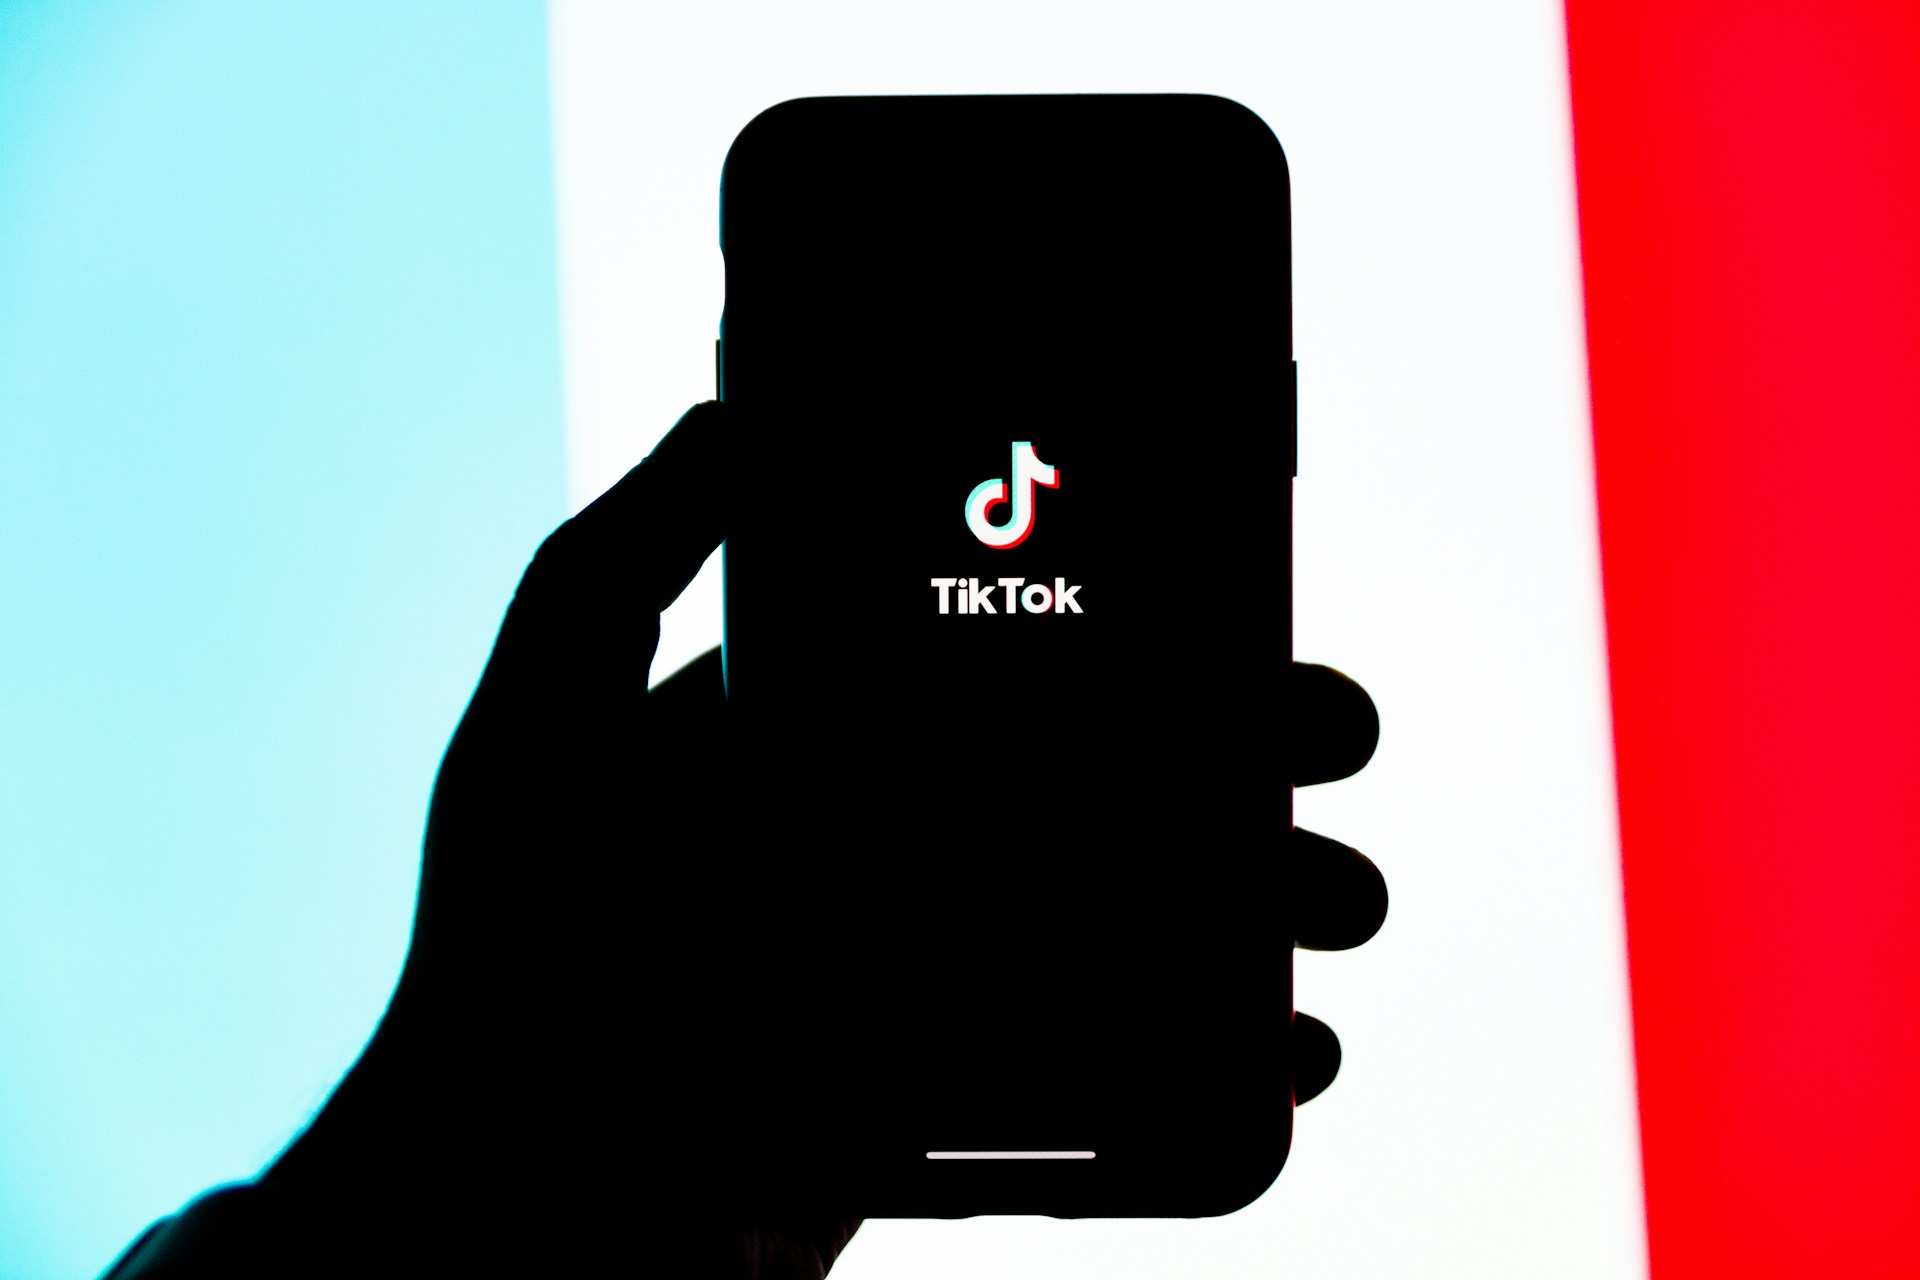 Bruselas investiga a TikTok por posible incumplimiento del Reglamento de Servicios Digitales